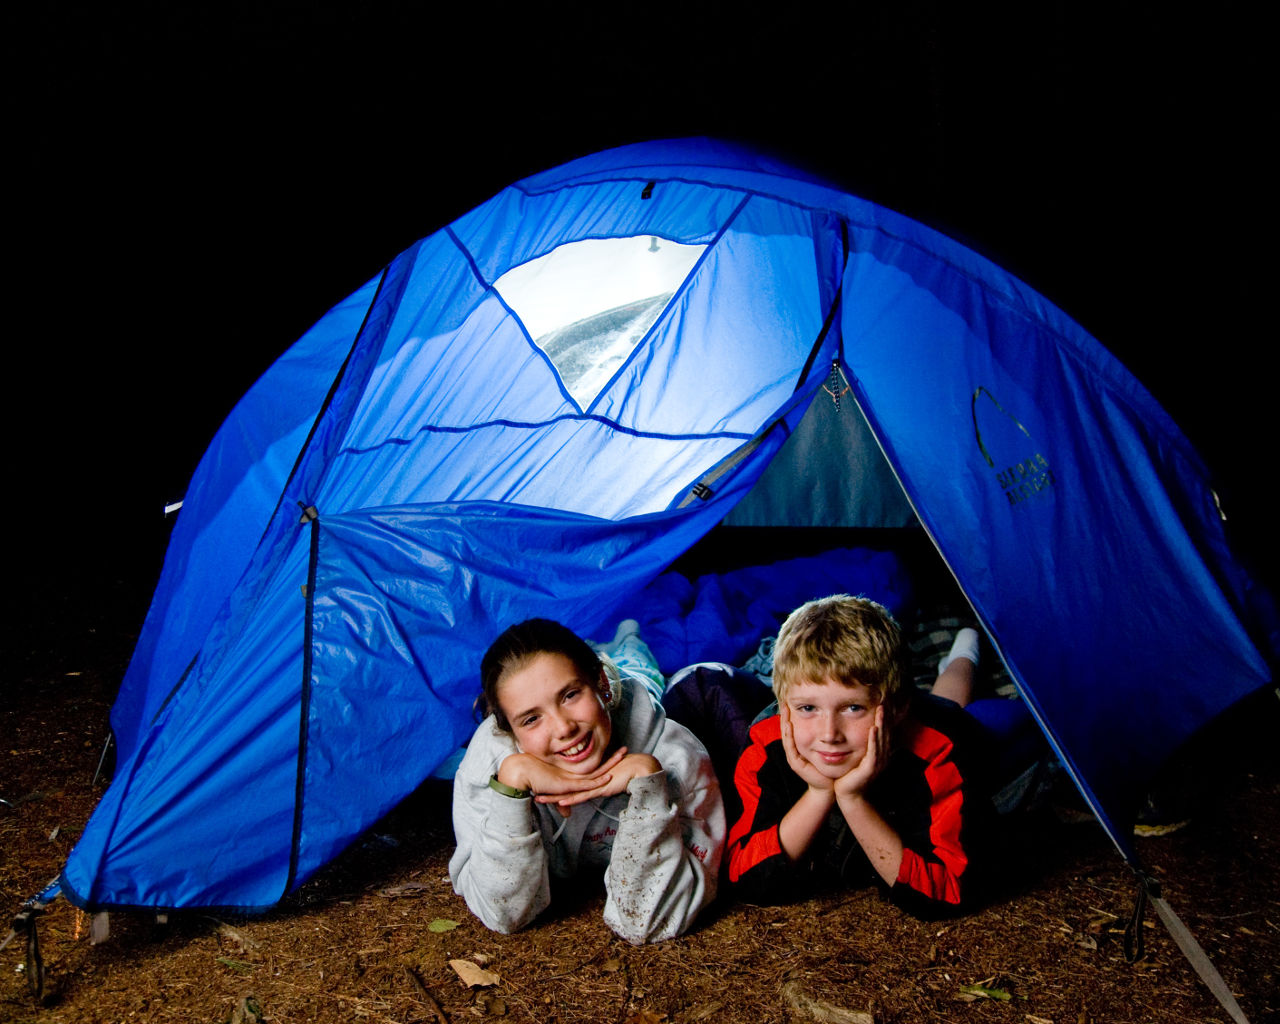 Camping together. Кемпинг. Палатка Camp. Детский кемпинг. Поход с палатками с детьми.